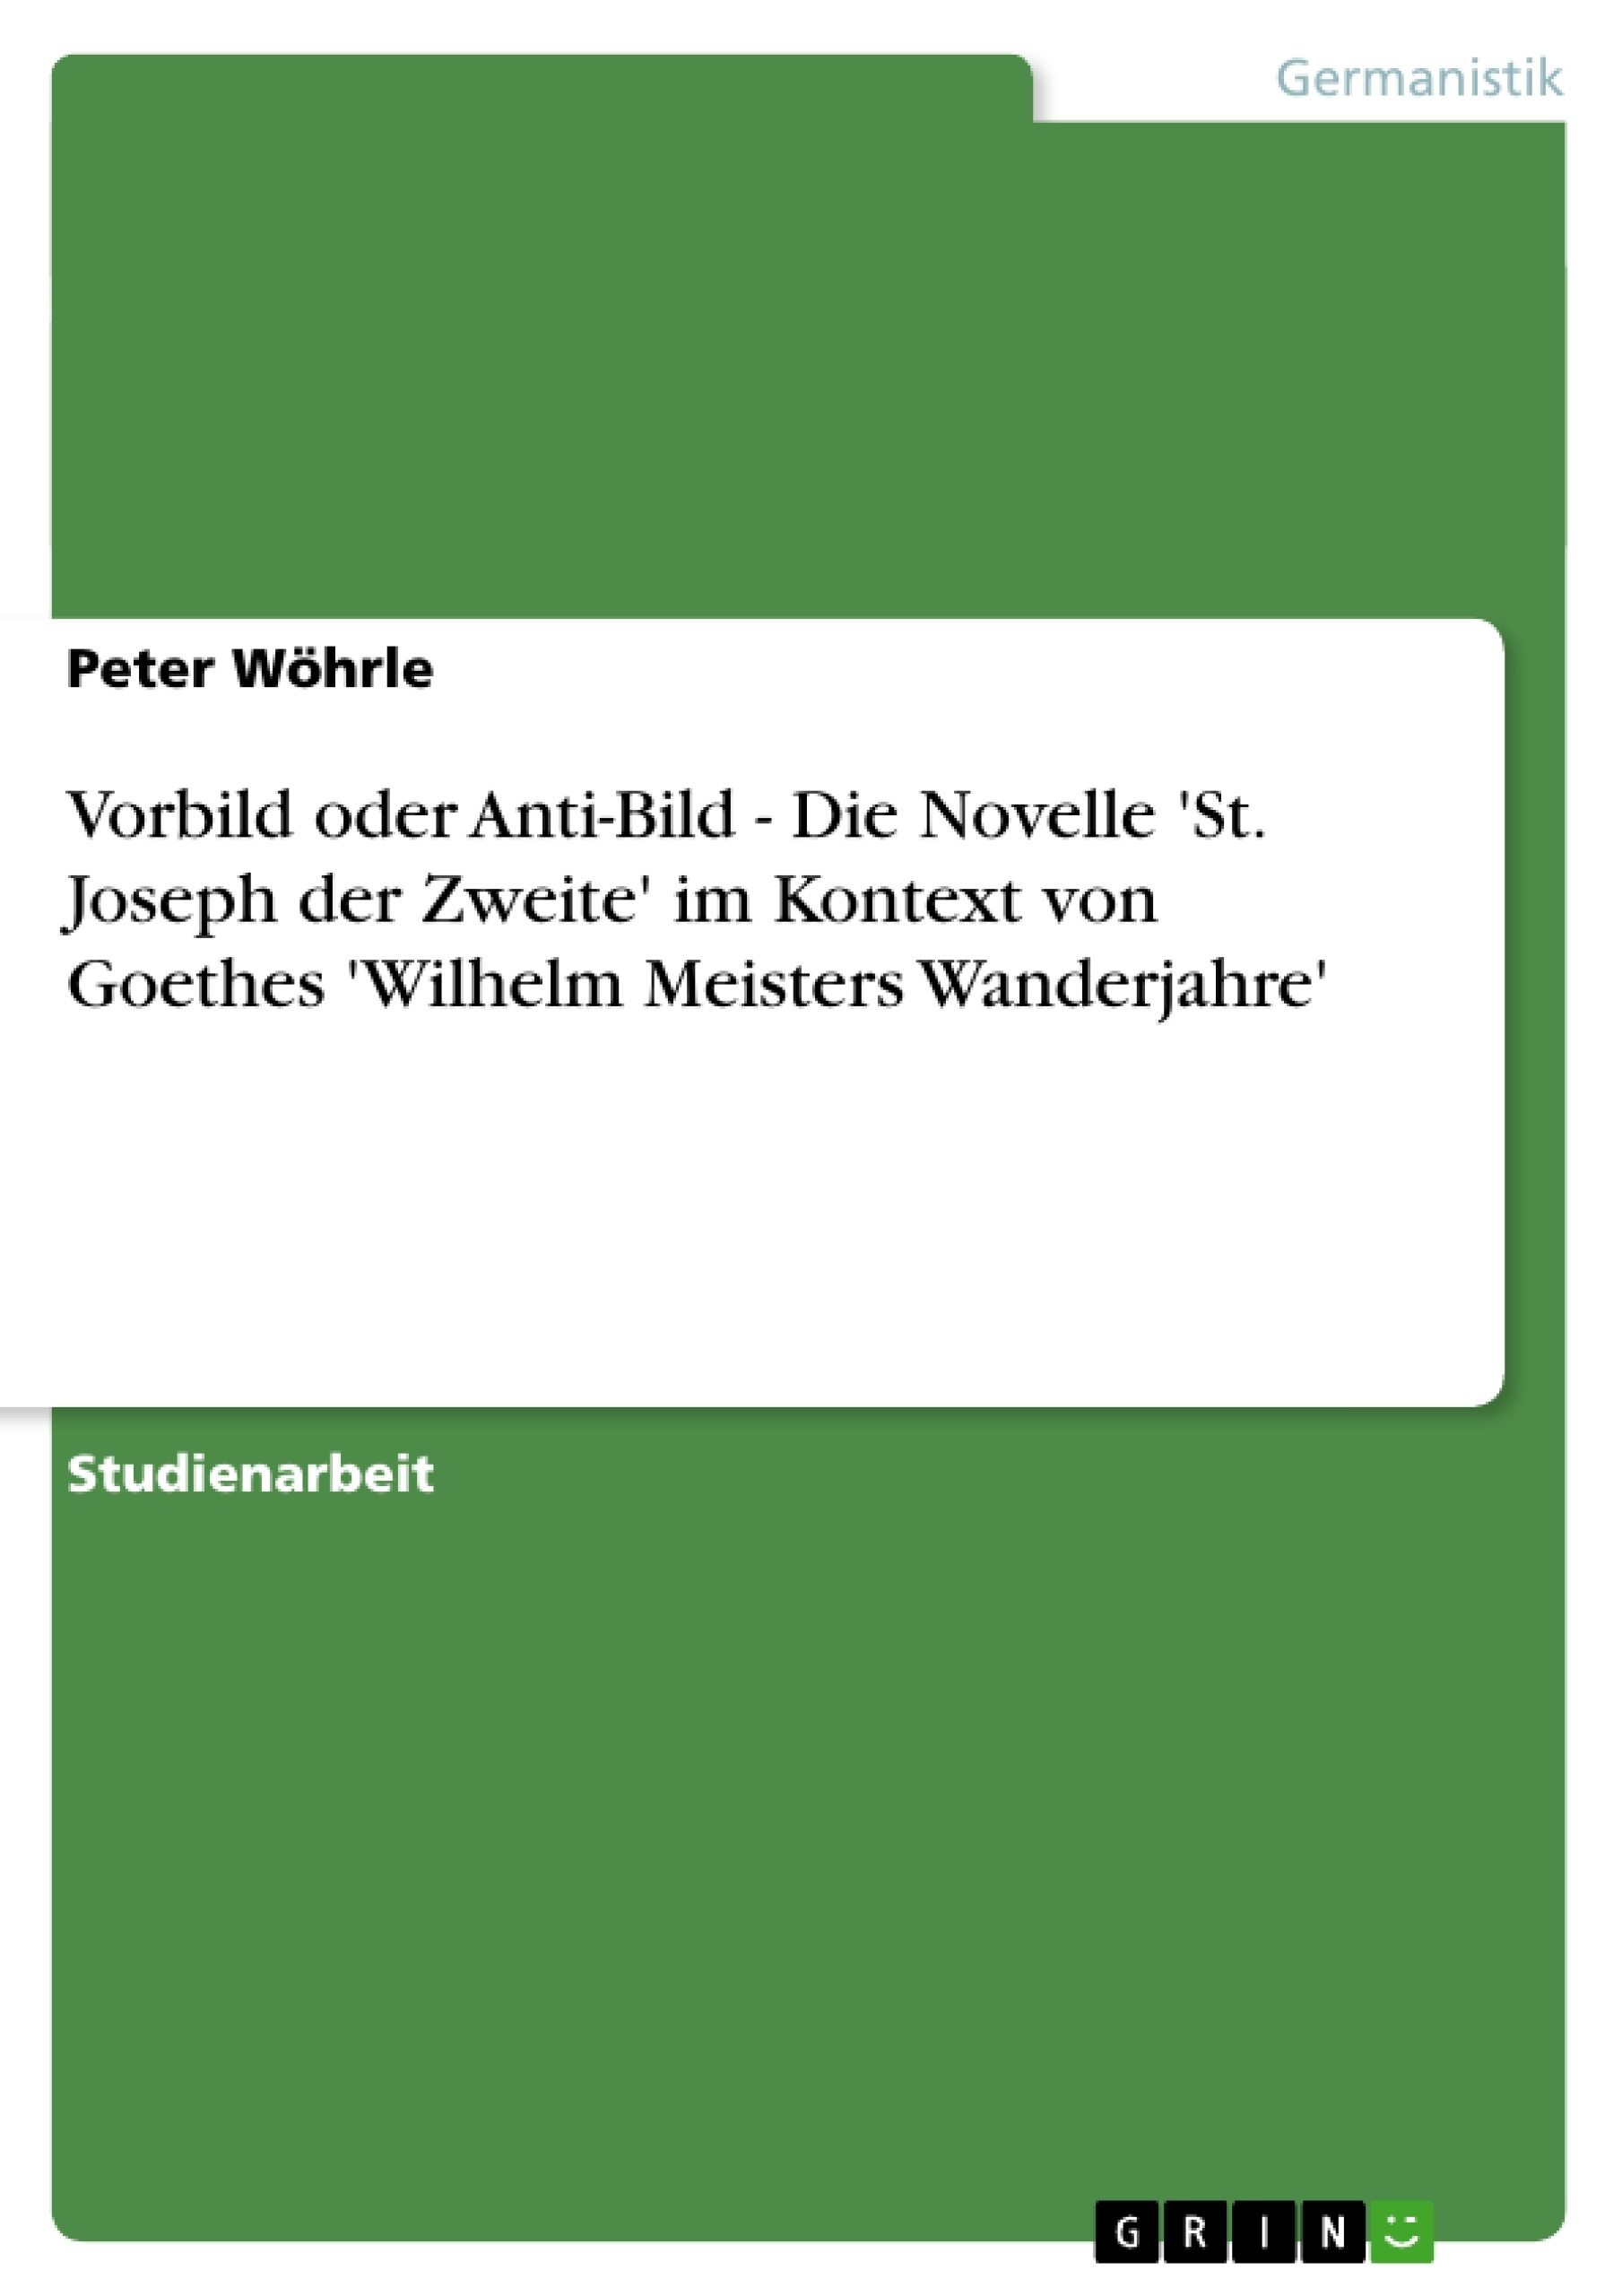 Titel: Vorbild oder Anti-Bild - Die Novelle 'St. Joseph der Zweite' im Kontext von Goethes 'Wilhelm Meisters Wanderjahre'